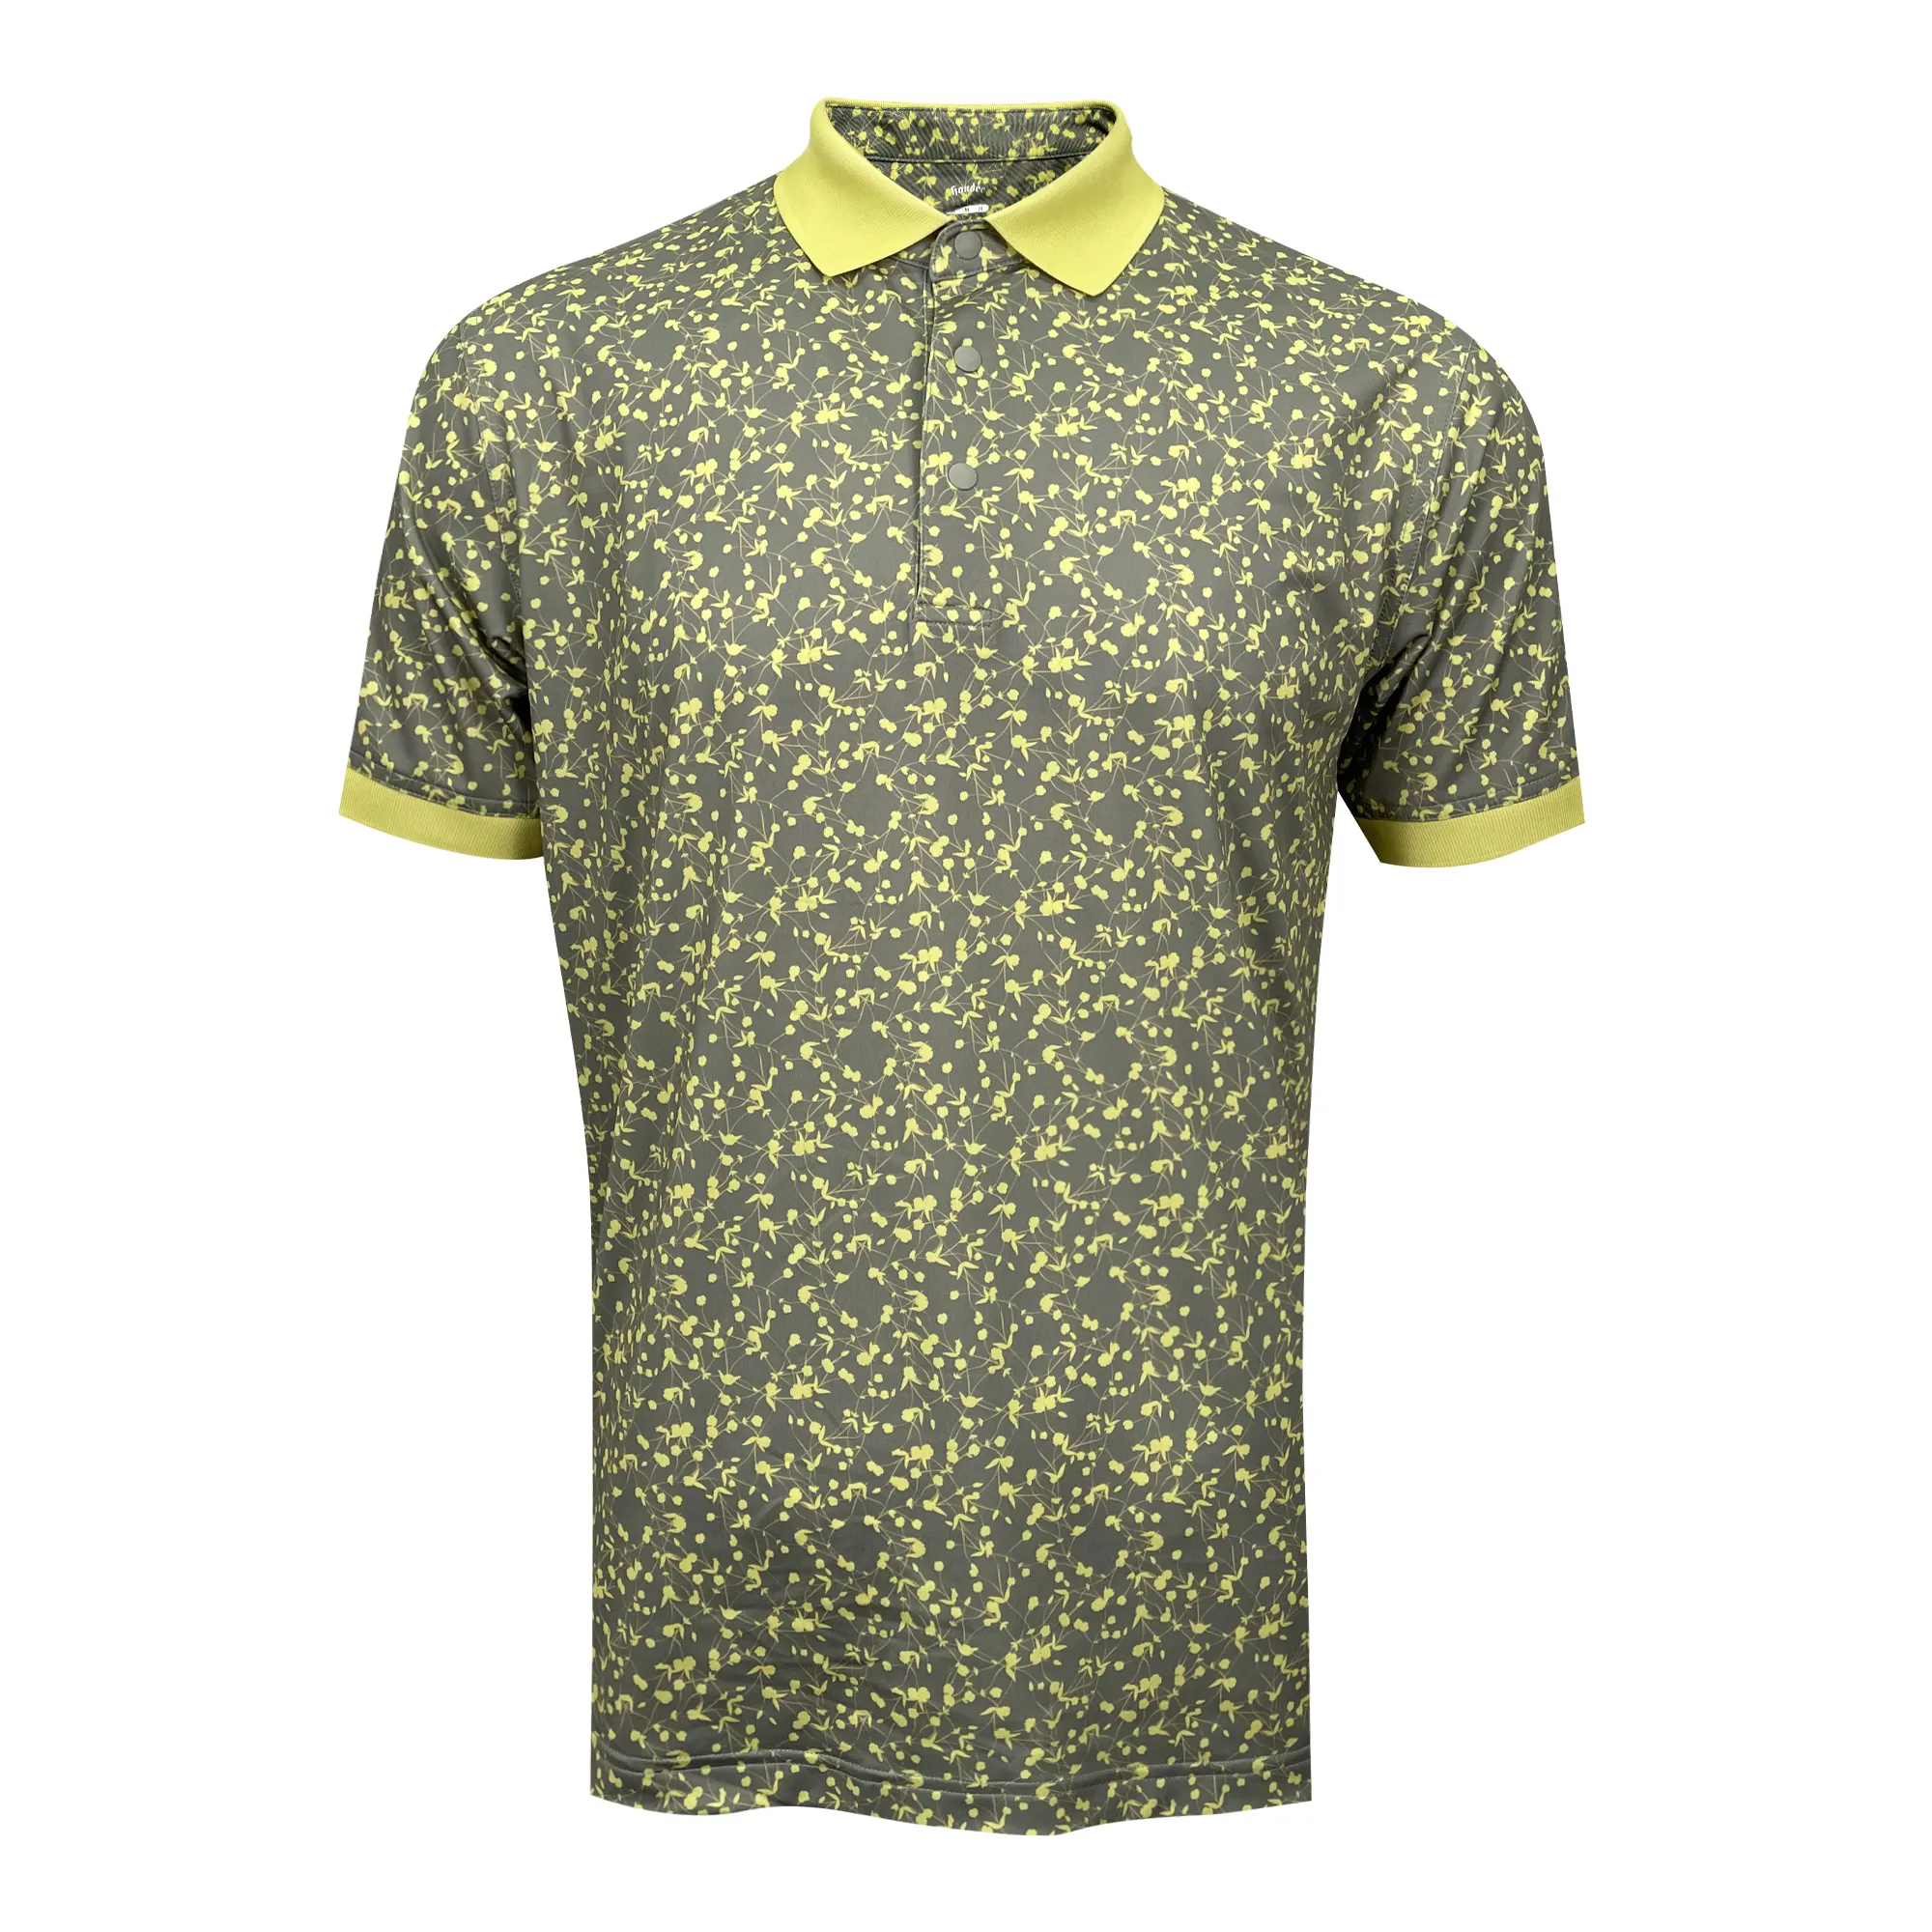 Rahat süblimasyon özel spor kıyafetleri erkekler kısa kollu boş Polo t shirt Poloshirts Golf kıyafeti